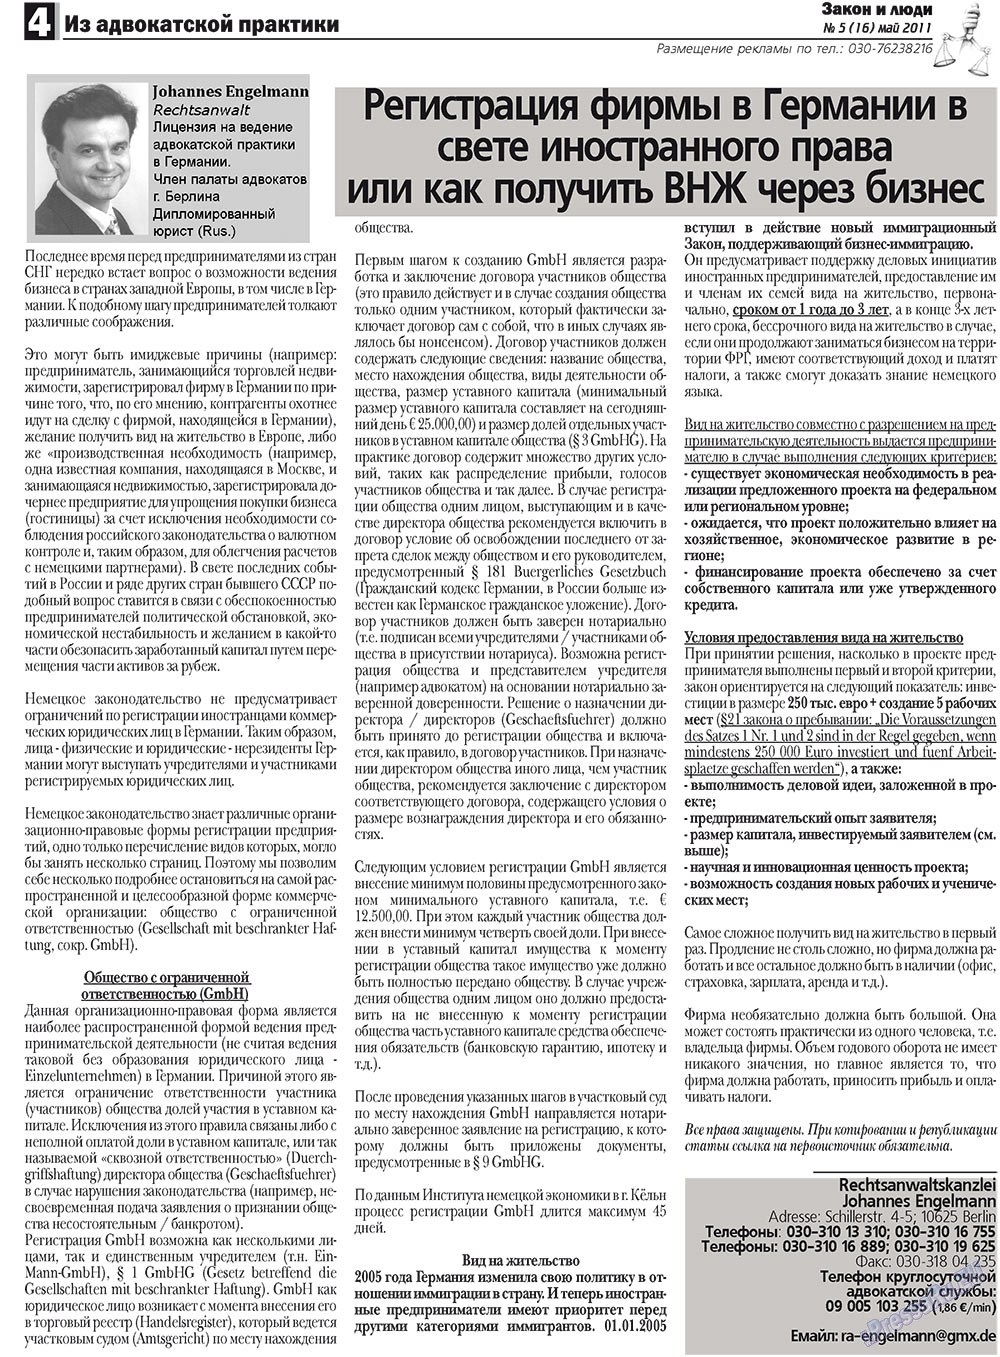 Закон и люди, газета. 2011 №5 стр.4